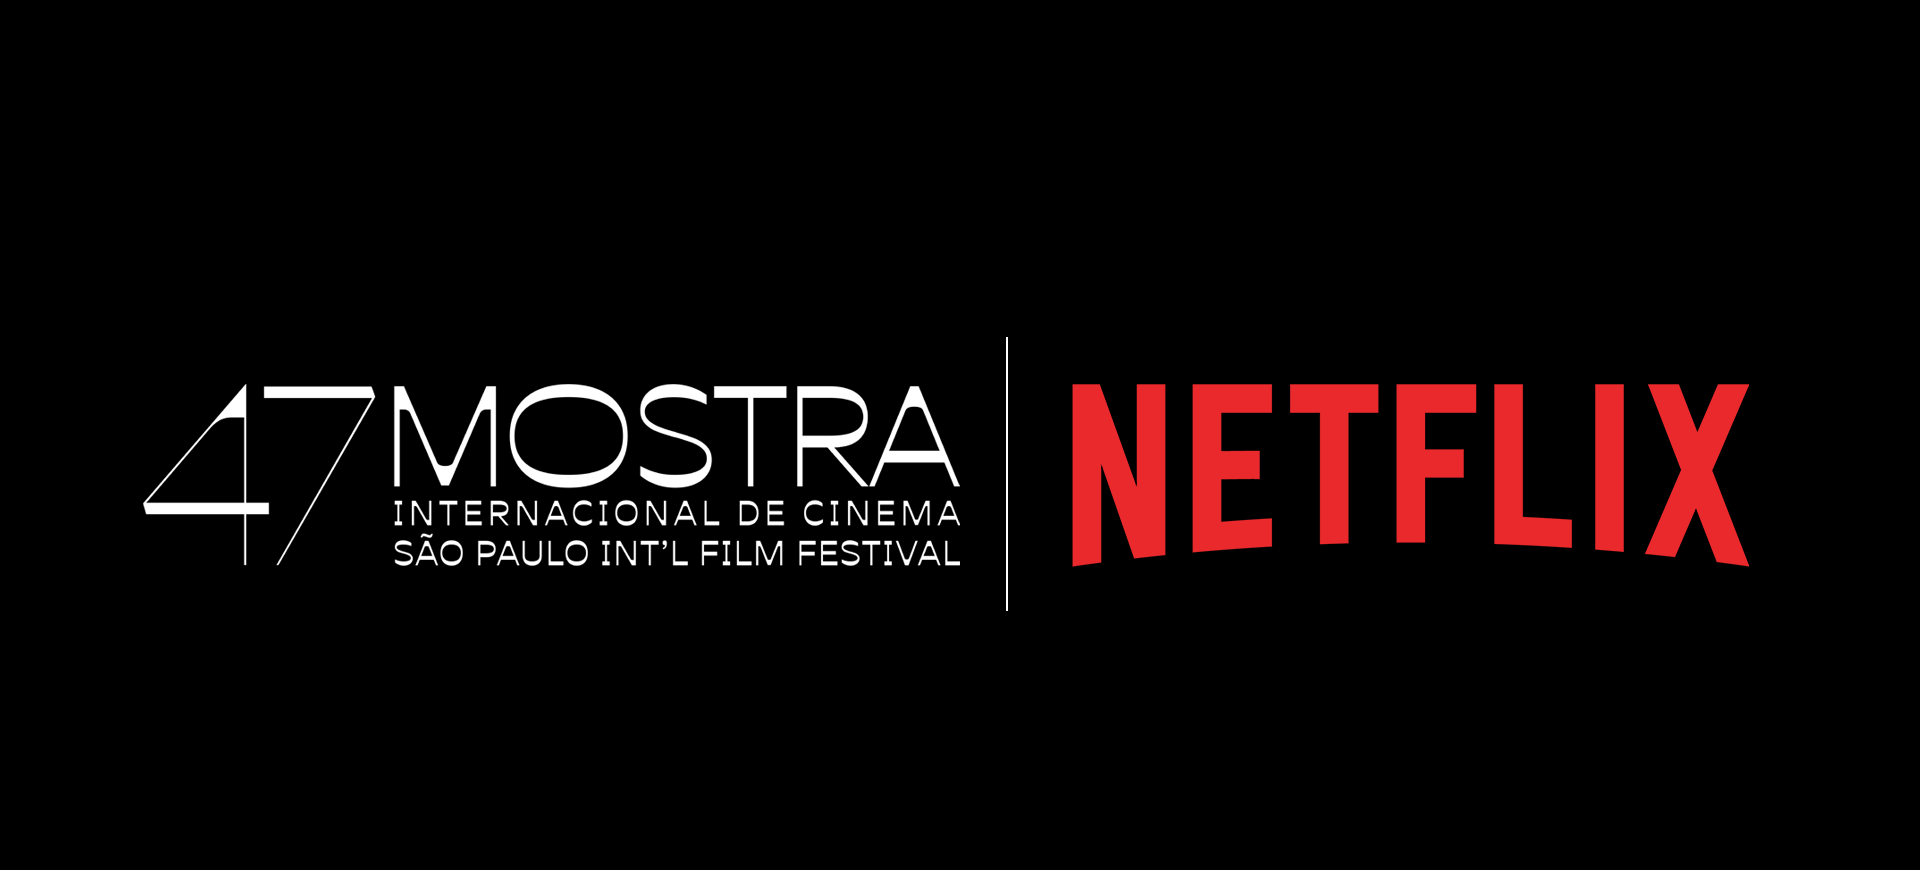 Pôster de divulgação com o logotipo da 47 Mostra Internacional de Cinema de São Paulo e da Netflix, celebrando a parceria para o primeiro Prêmio Netflix para produções brasileiras